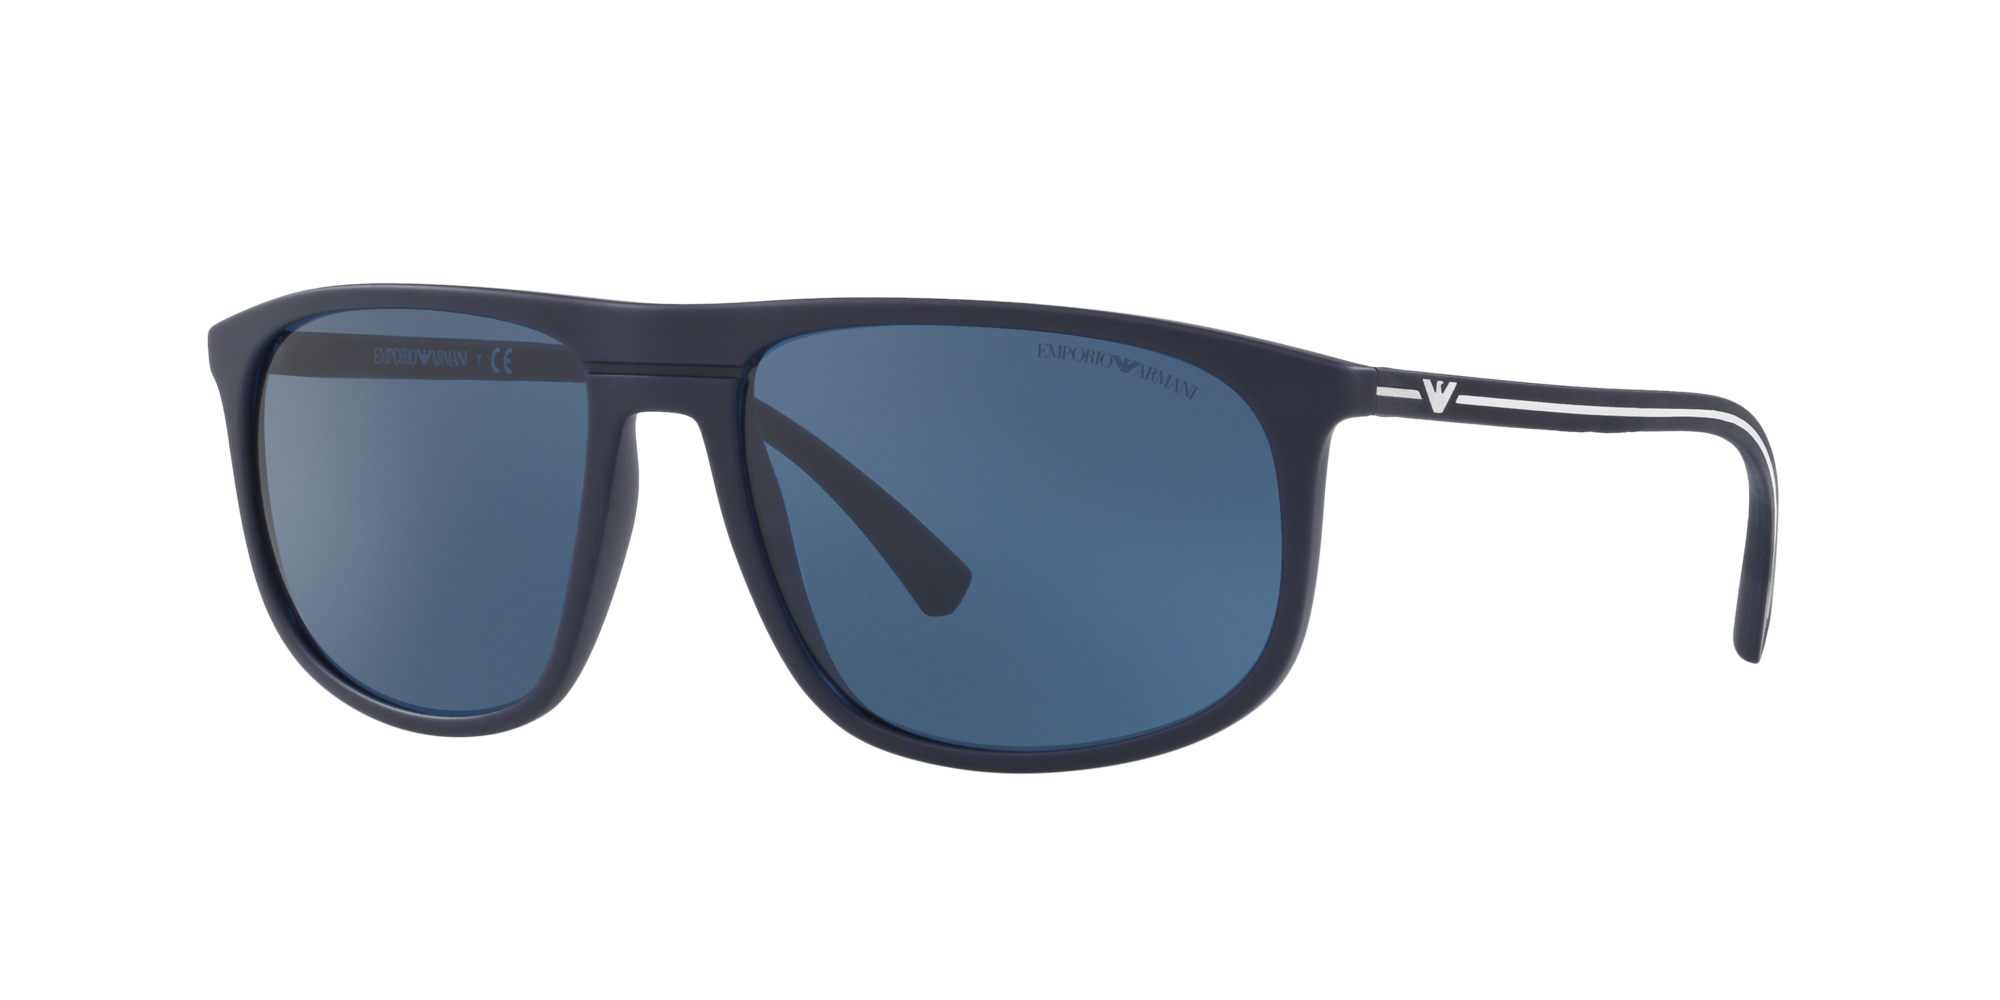 armani sunglasses blue frame